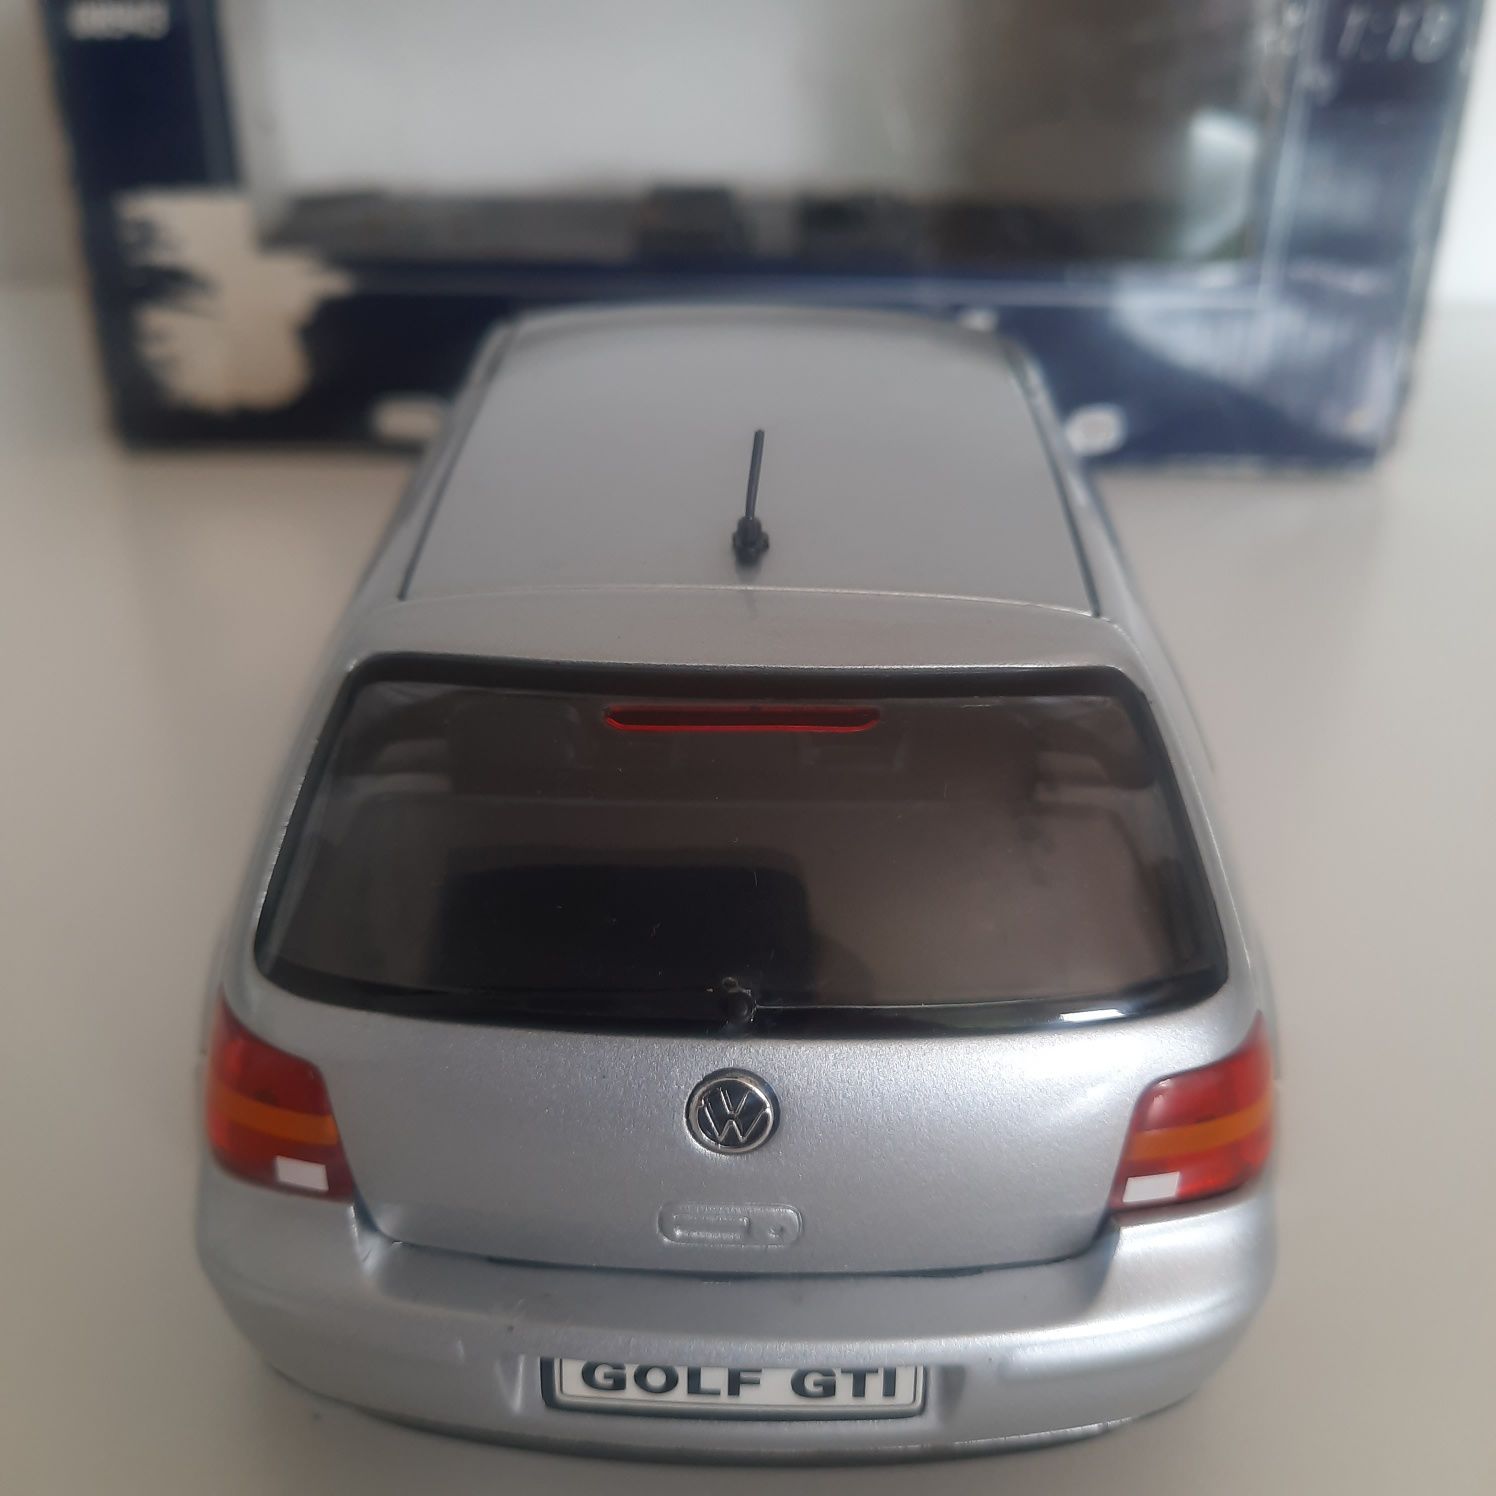 Volkswagen golf IV gti revell 1:18 srebrny tuning